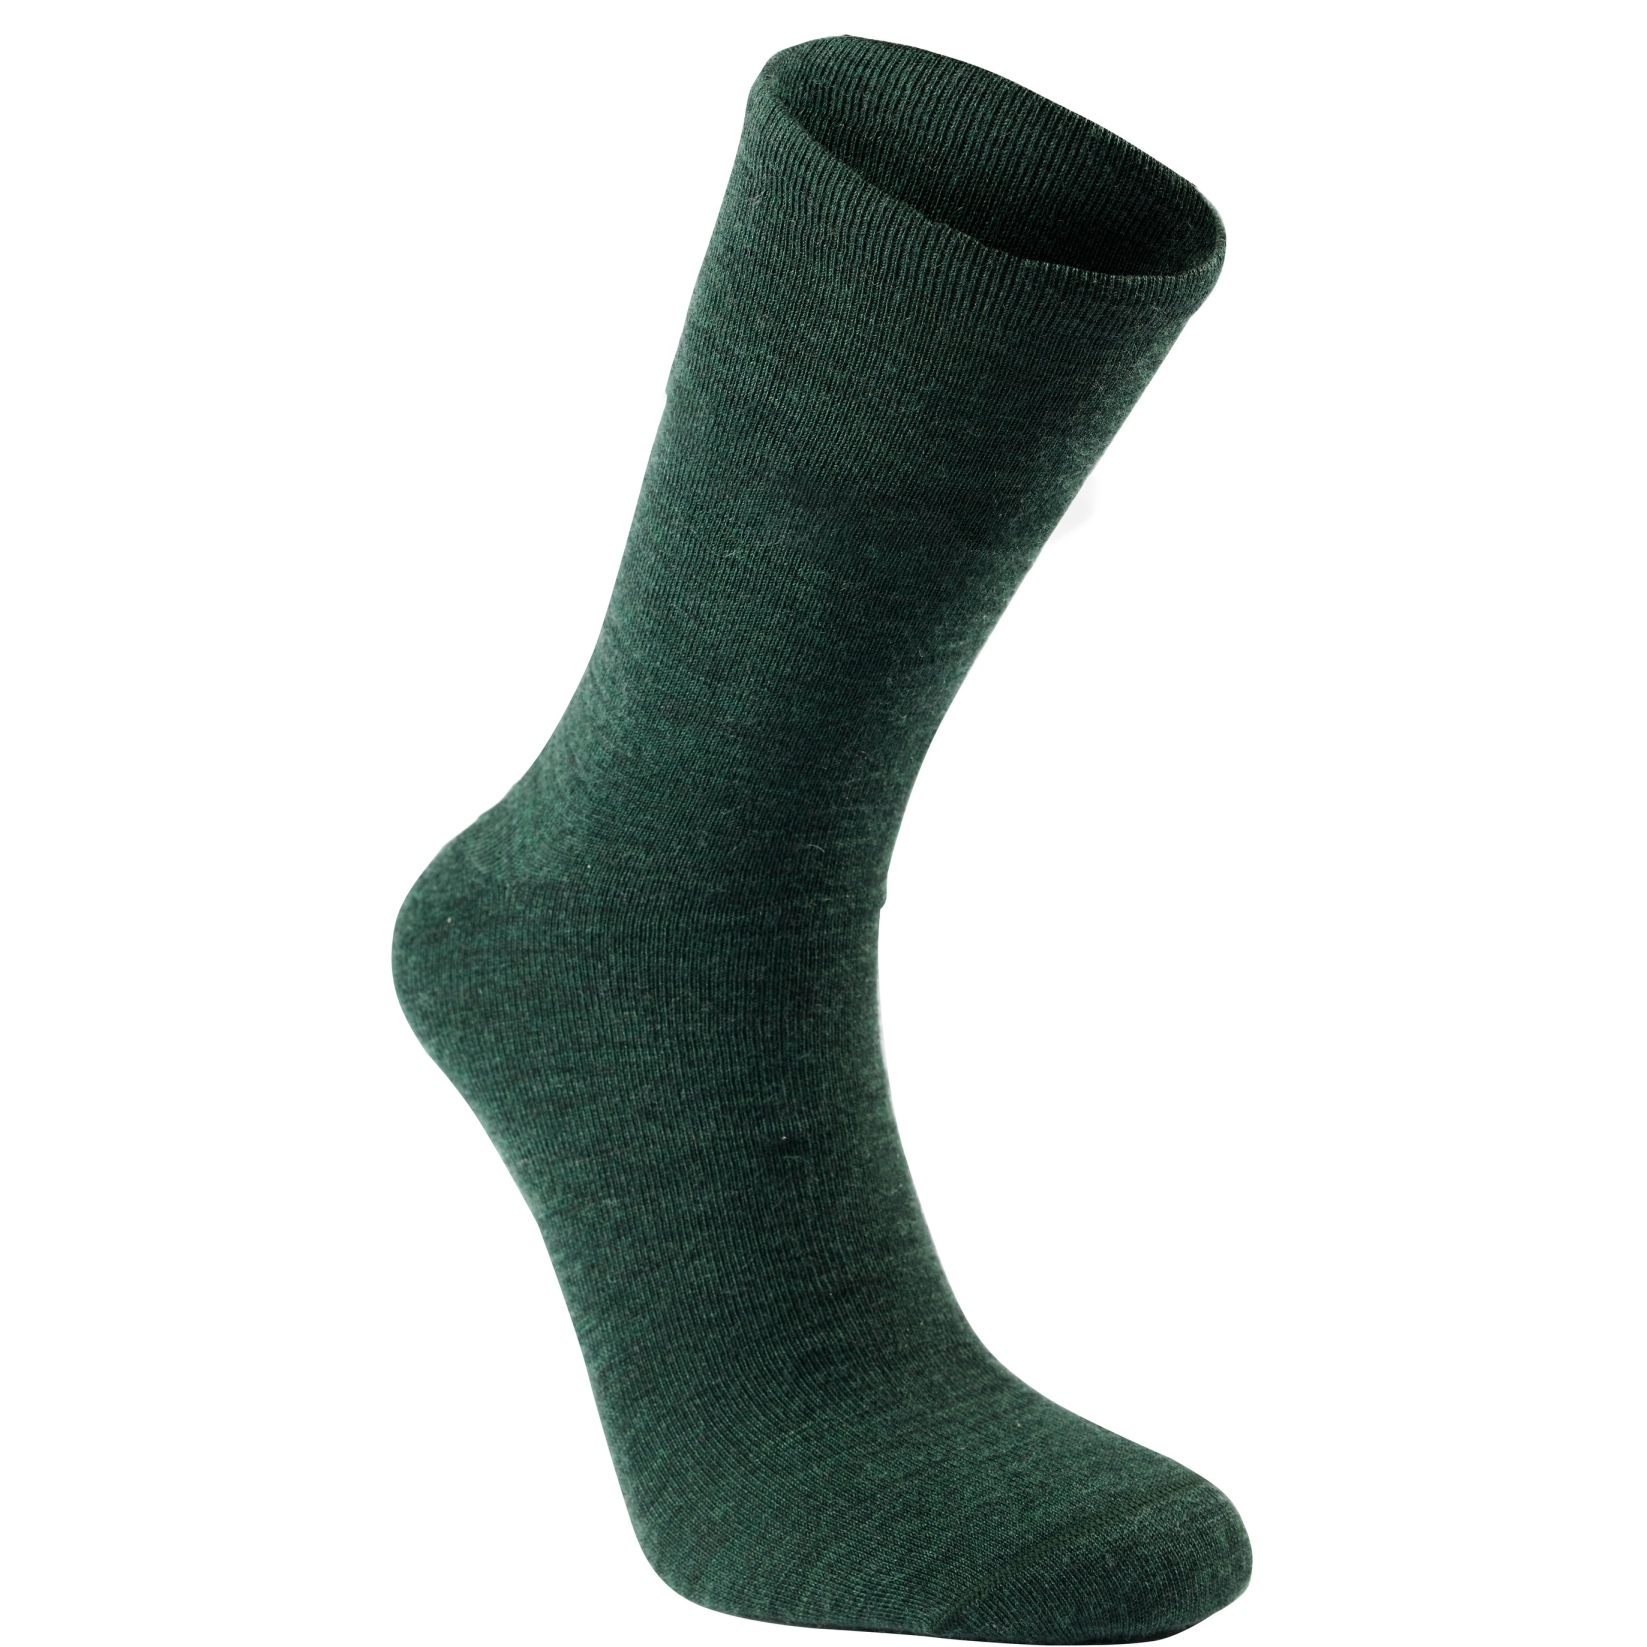 Produktbild von Woolpower Liner Classic Socken - forest green